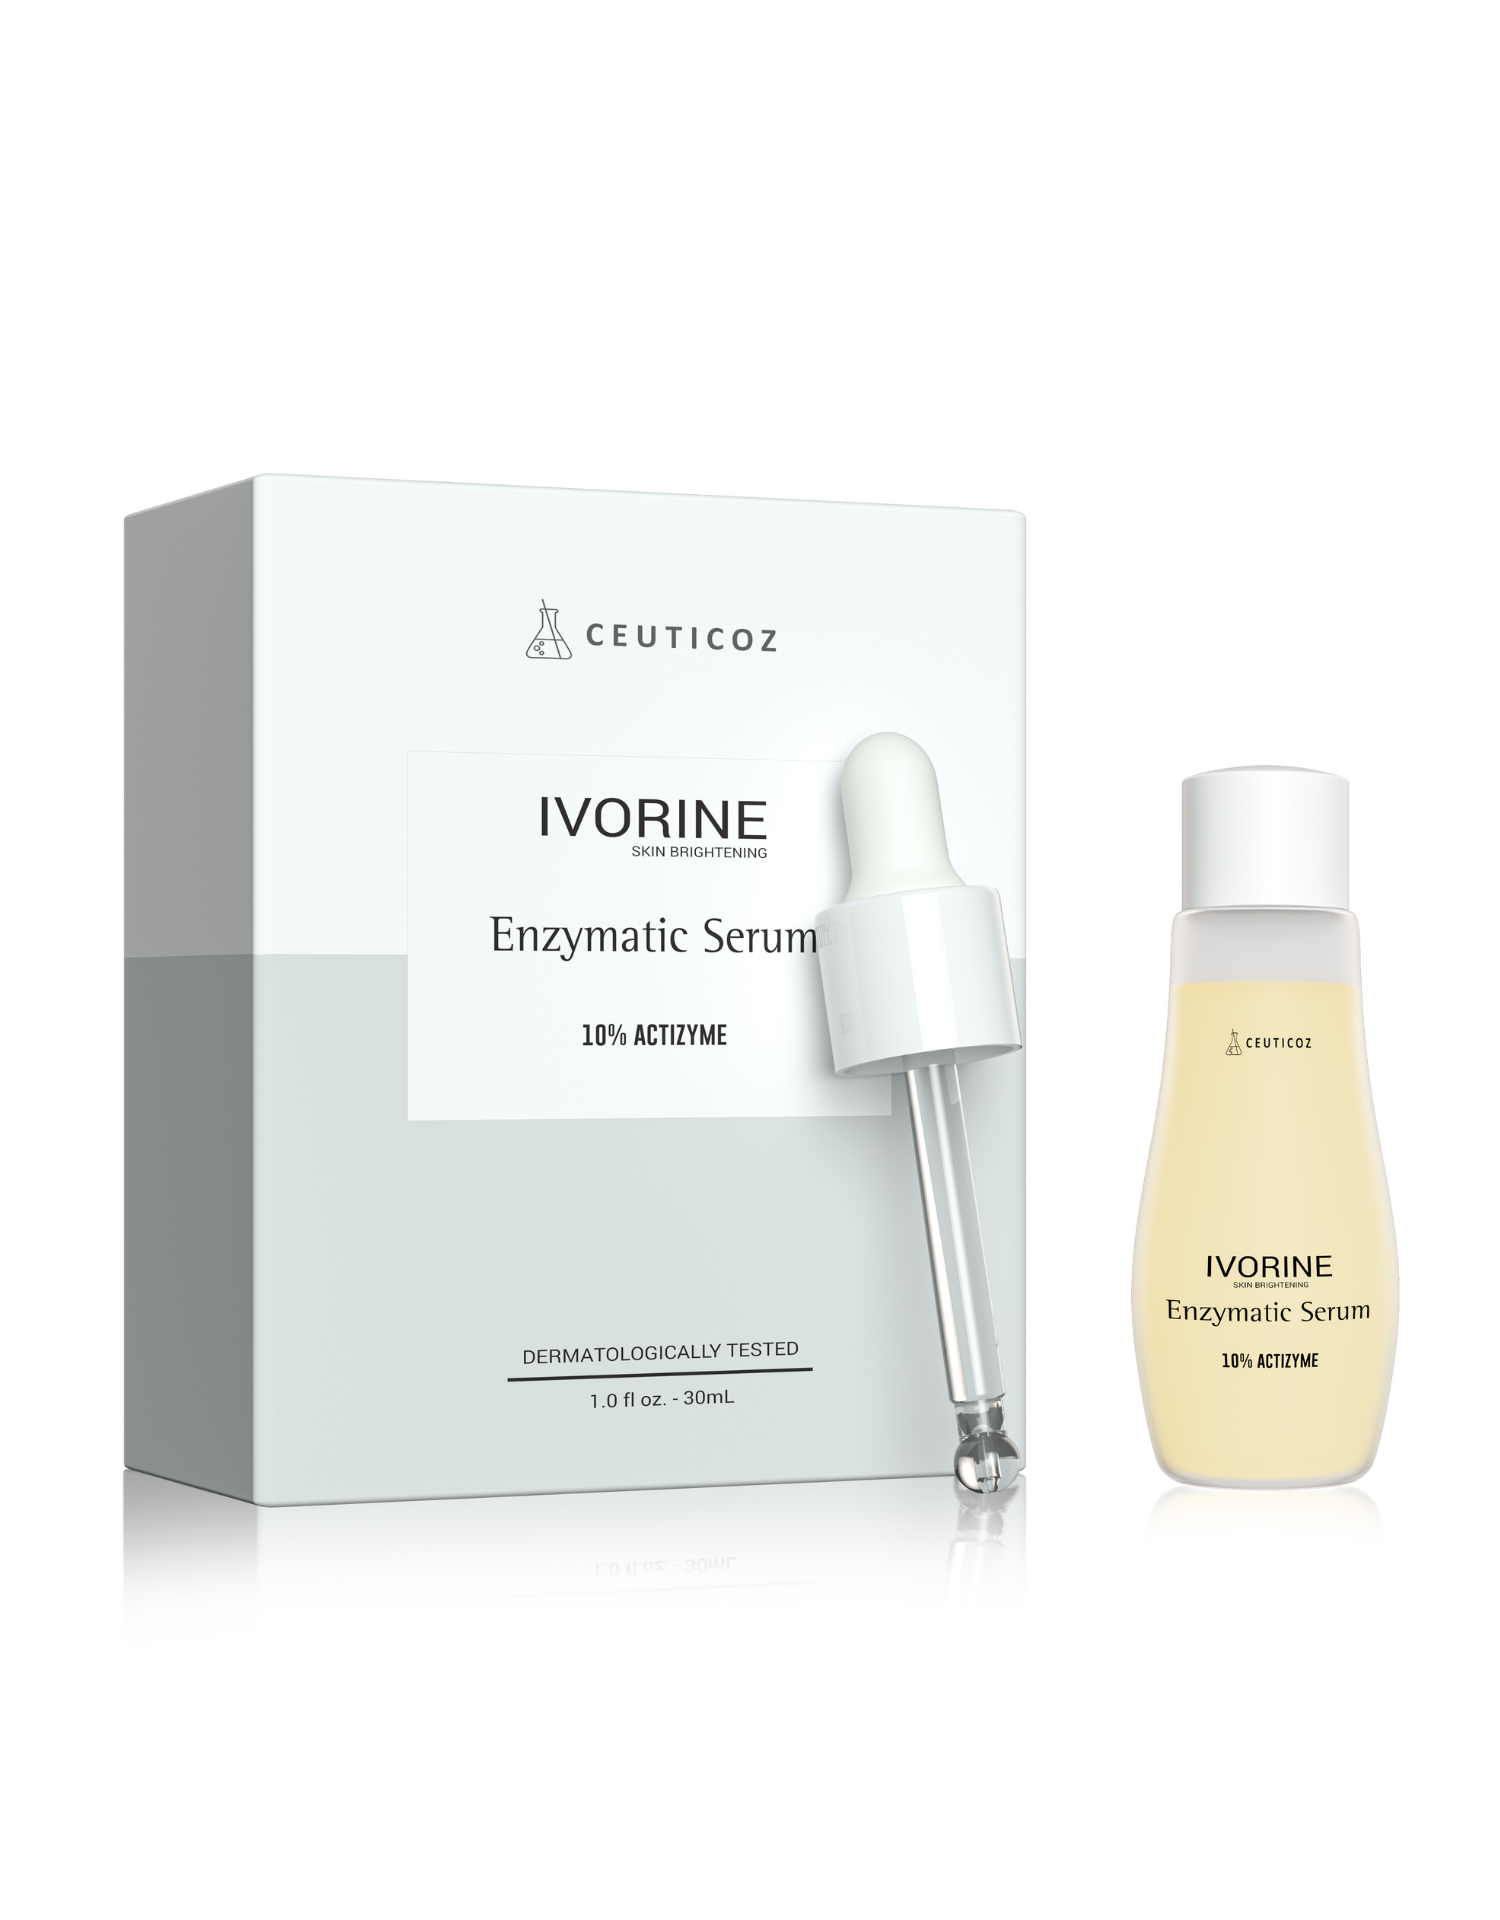 Ivorine Skin Brightening Enzymatic Serum